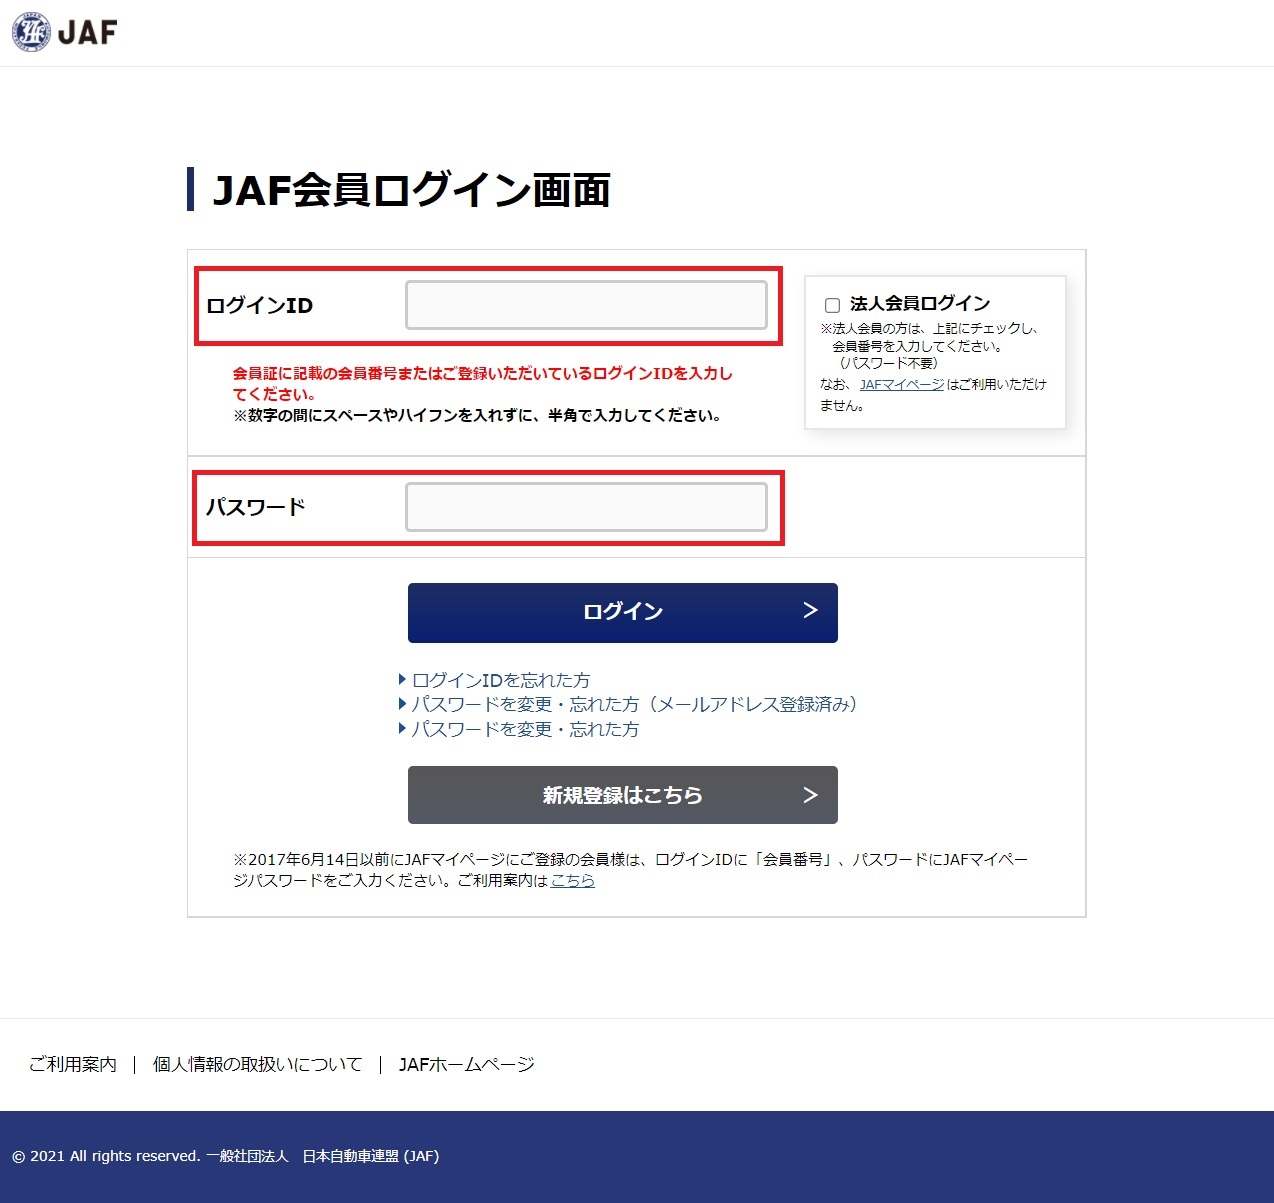 2. JAF会員サイトのログインID、パスワードをご入力ください。